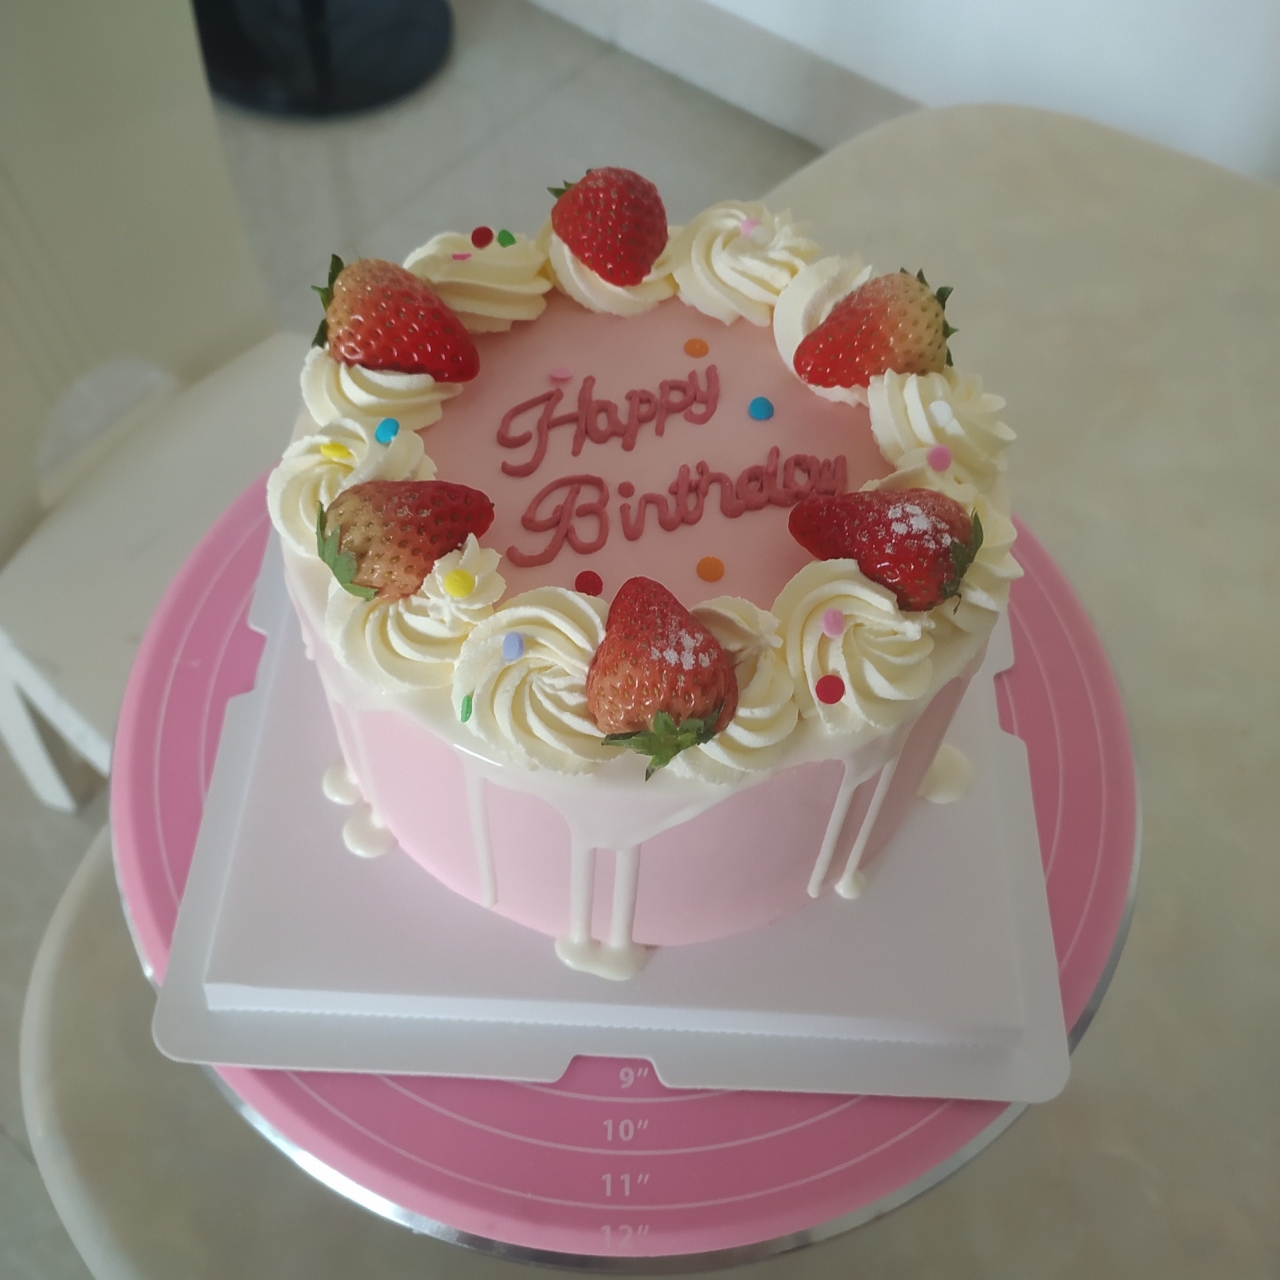 【搬运合集】儿童生日主题蛋糕装饰图🎂蛋糕灵感图